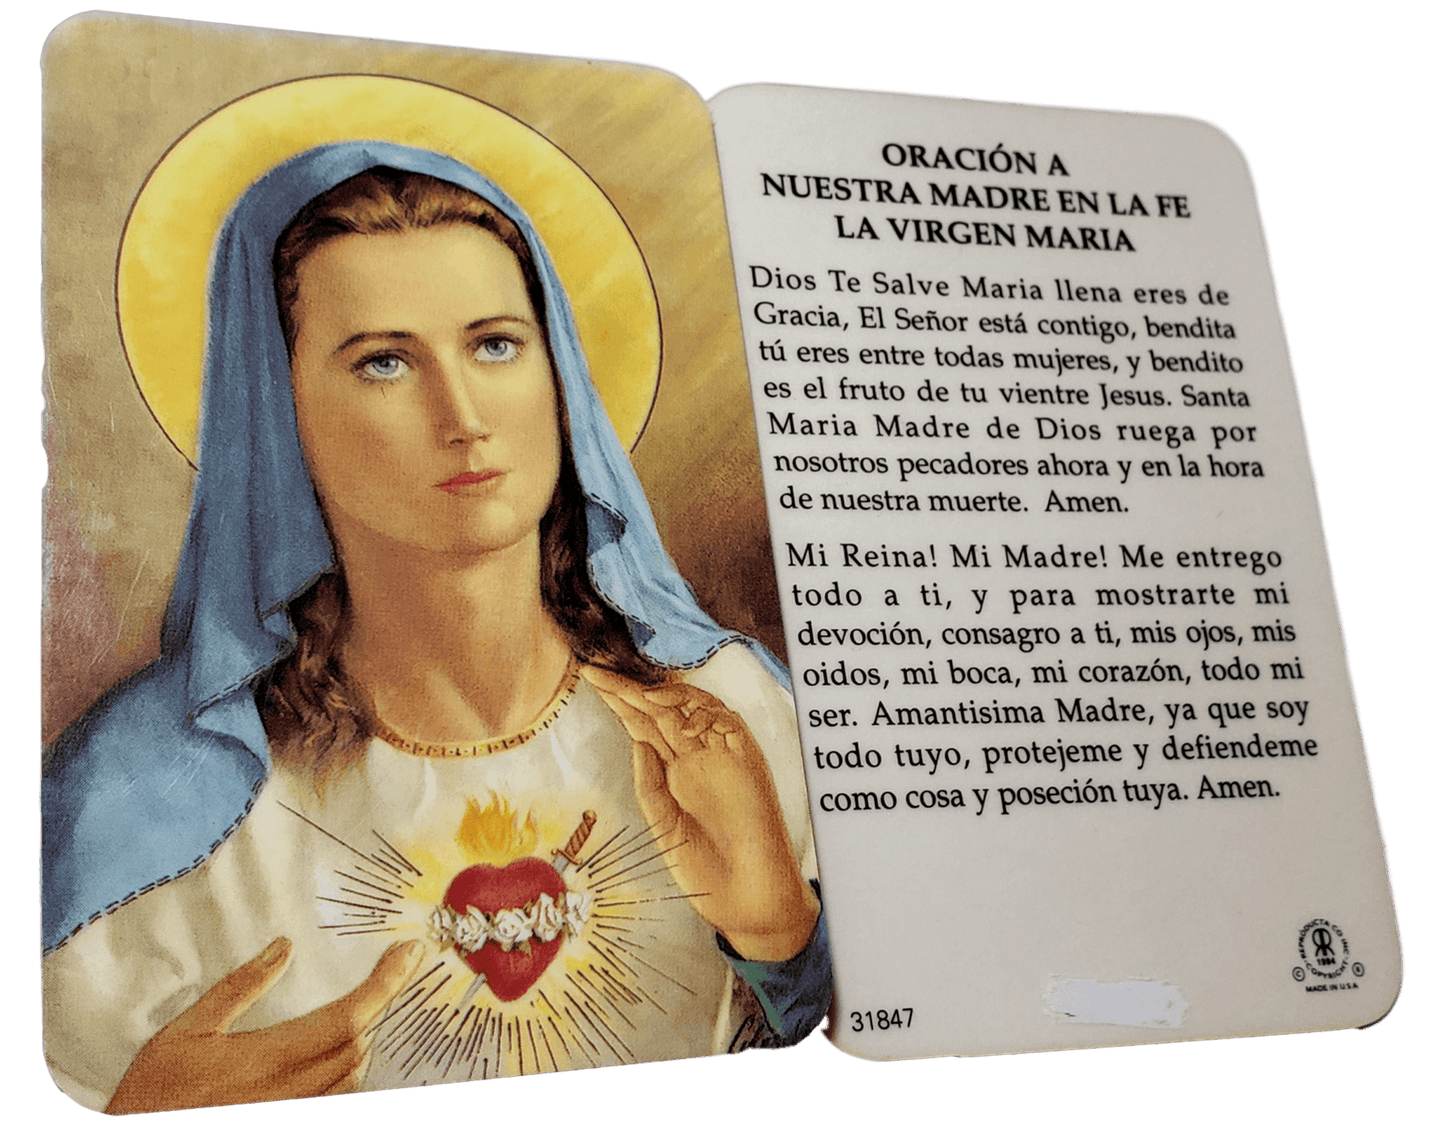 Prayer Card Oracion A Nuestra Madre En La Fe La Virgen Maria SPANISH Laminated 31847 - Ysleta Mission Gift Shop- VOTED El Paso's Best Gift Shop